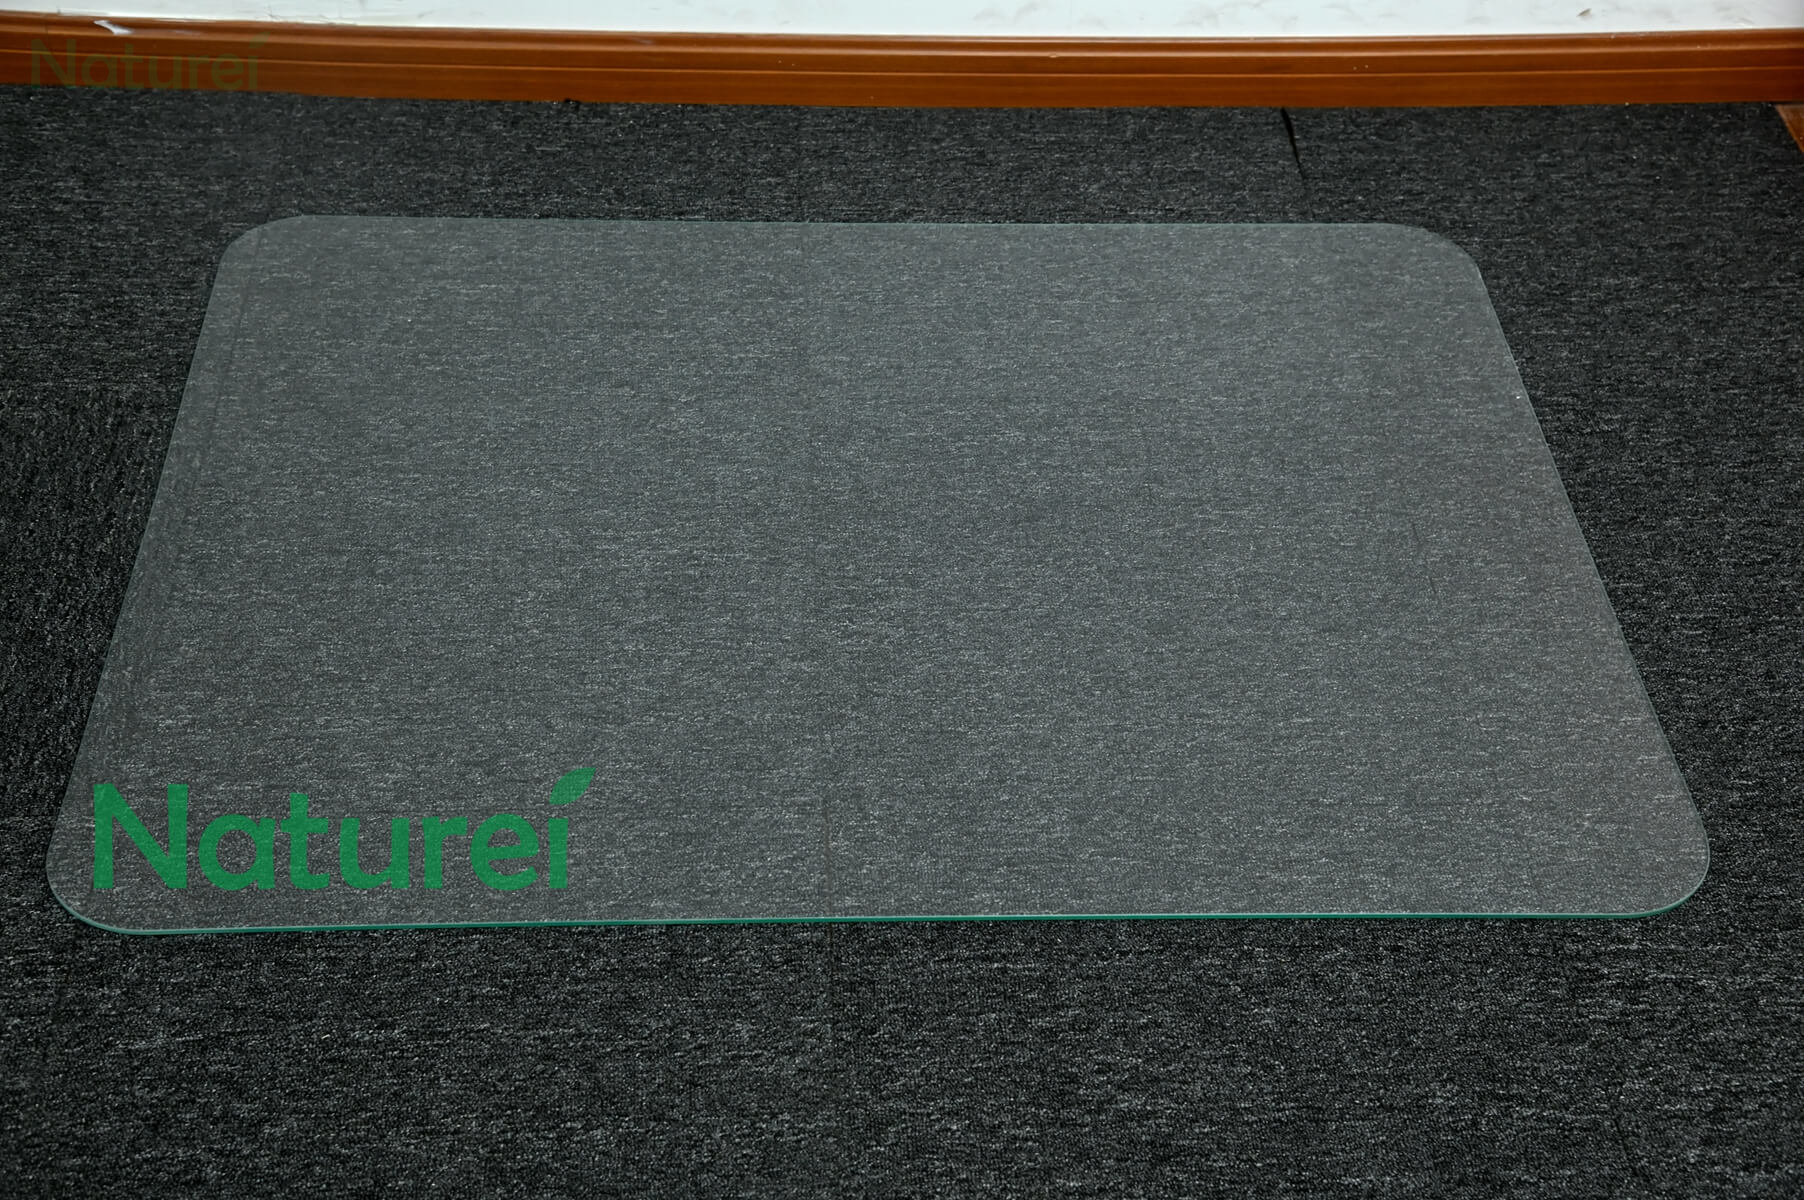 Glass Floor Chair Mat for Carpet